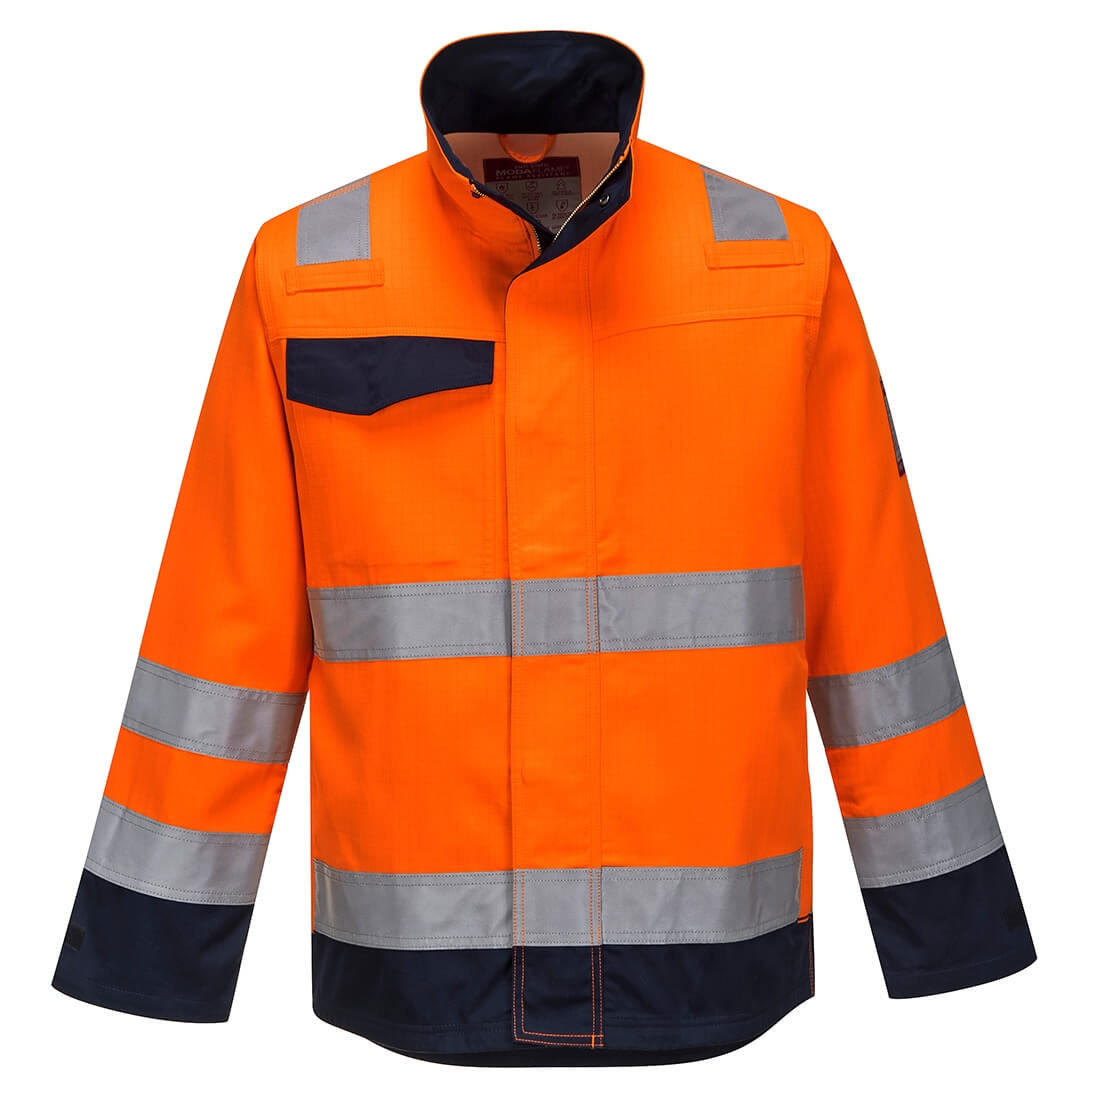 Veste Modaflame GO/RT orange/marine - Les vêtements de protection